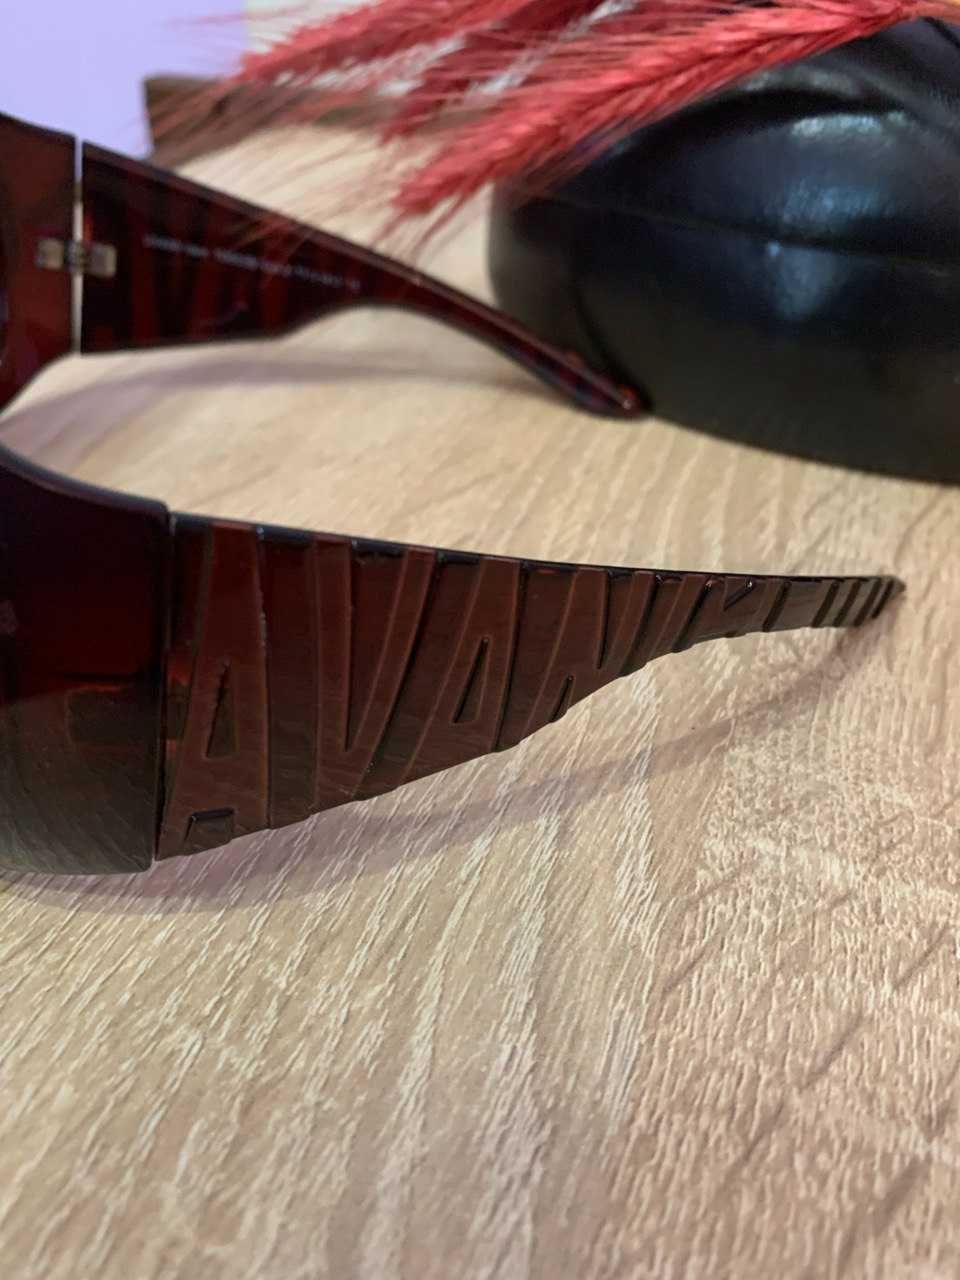 Фірмові сонцезахисні окуляри TRENDY з чехлом-футляром